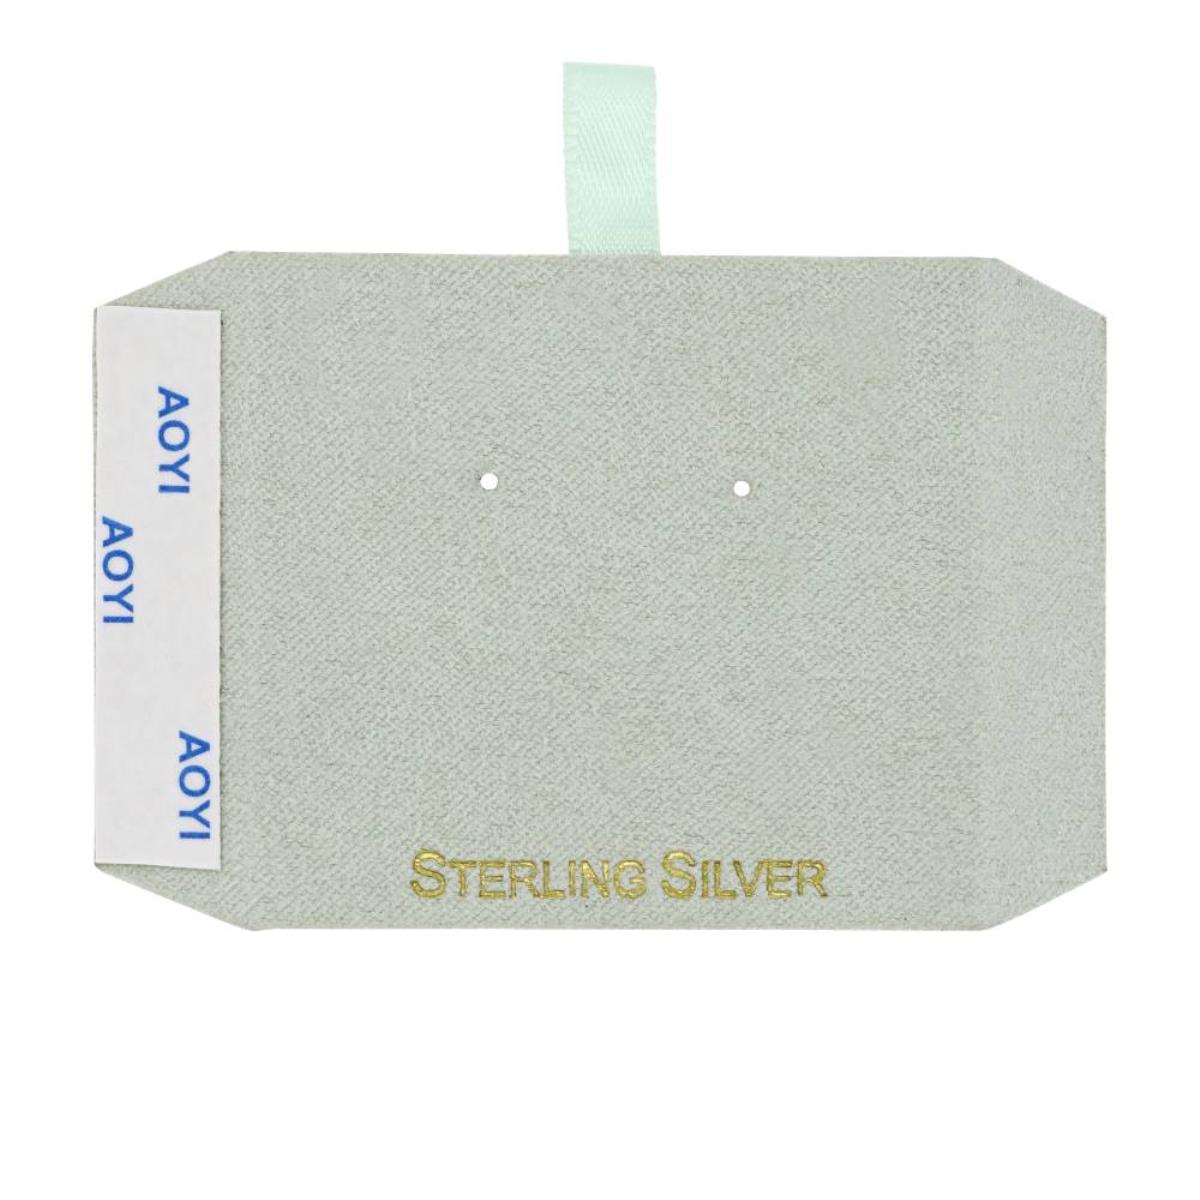 Sage Sterling Silver, Gold Foil Necklace & Stud Insert (Box B06-159/Sage/M)